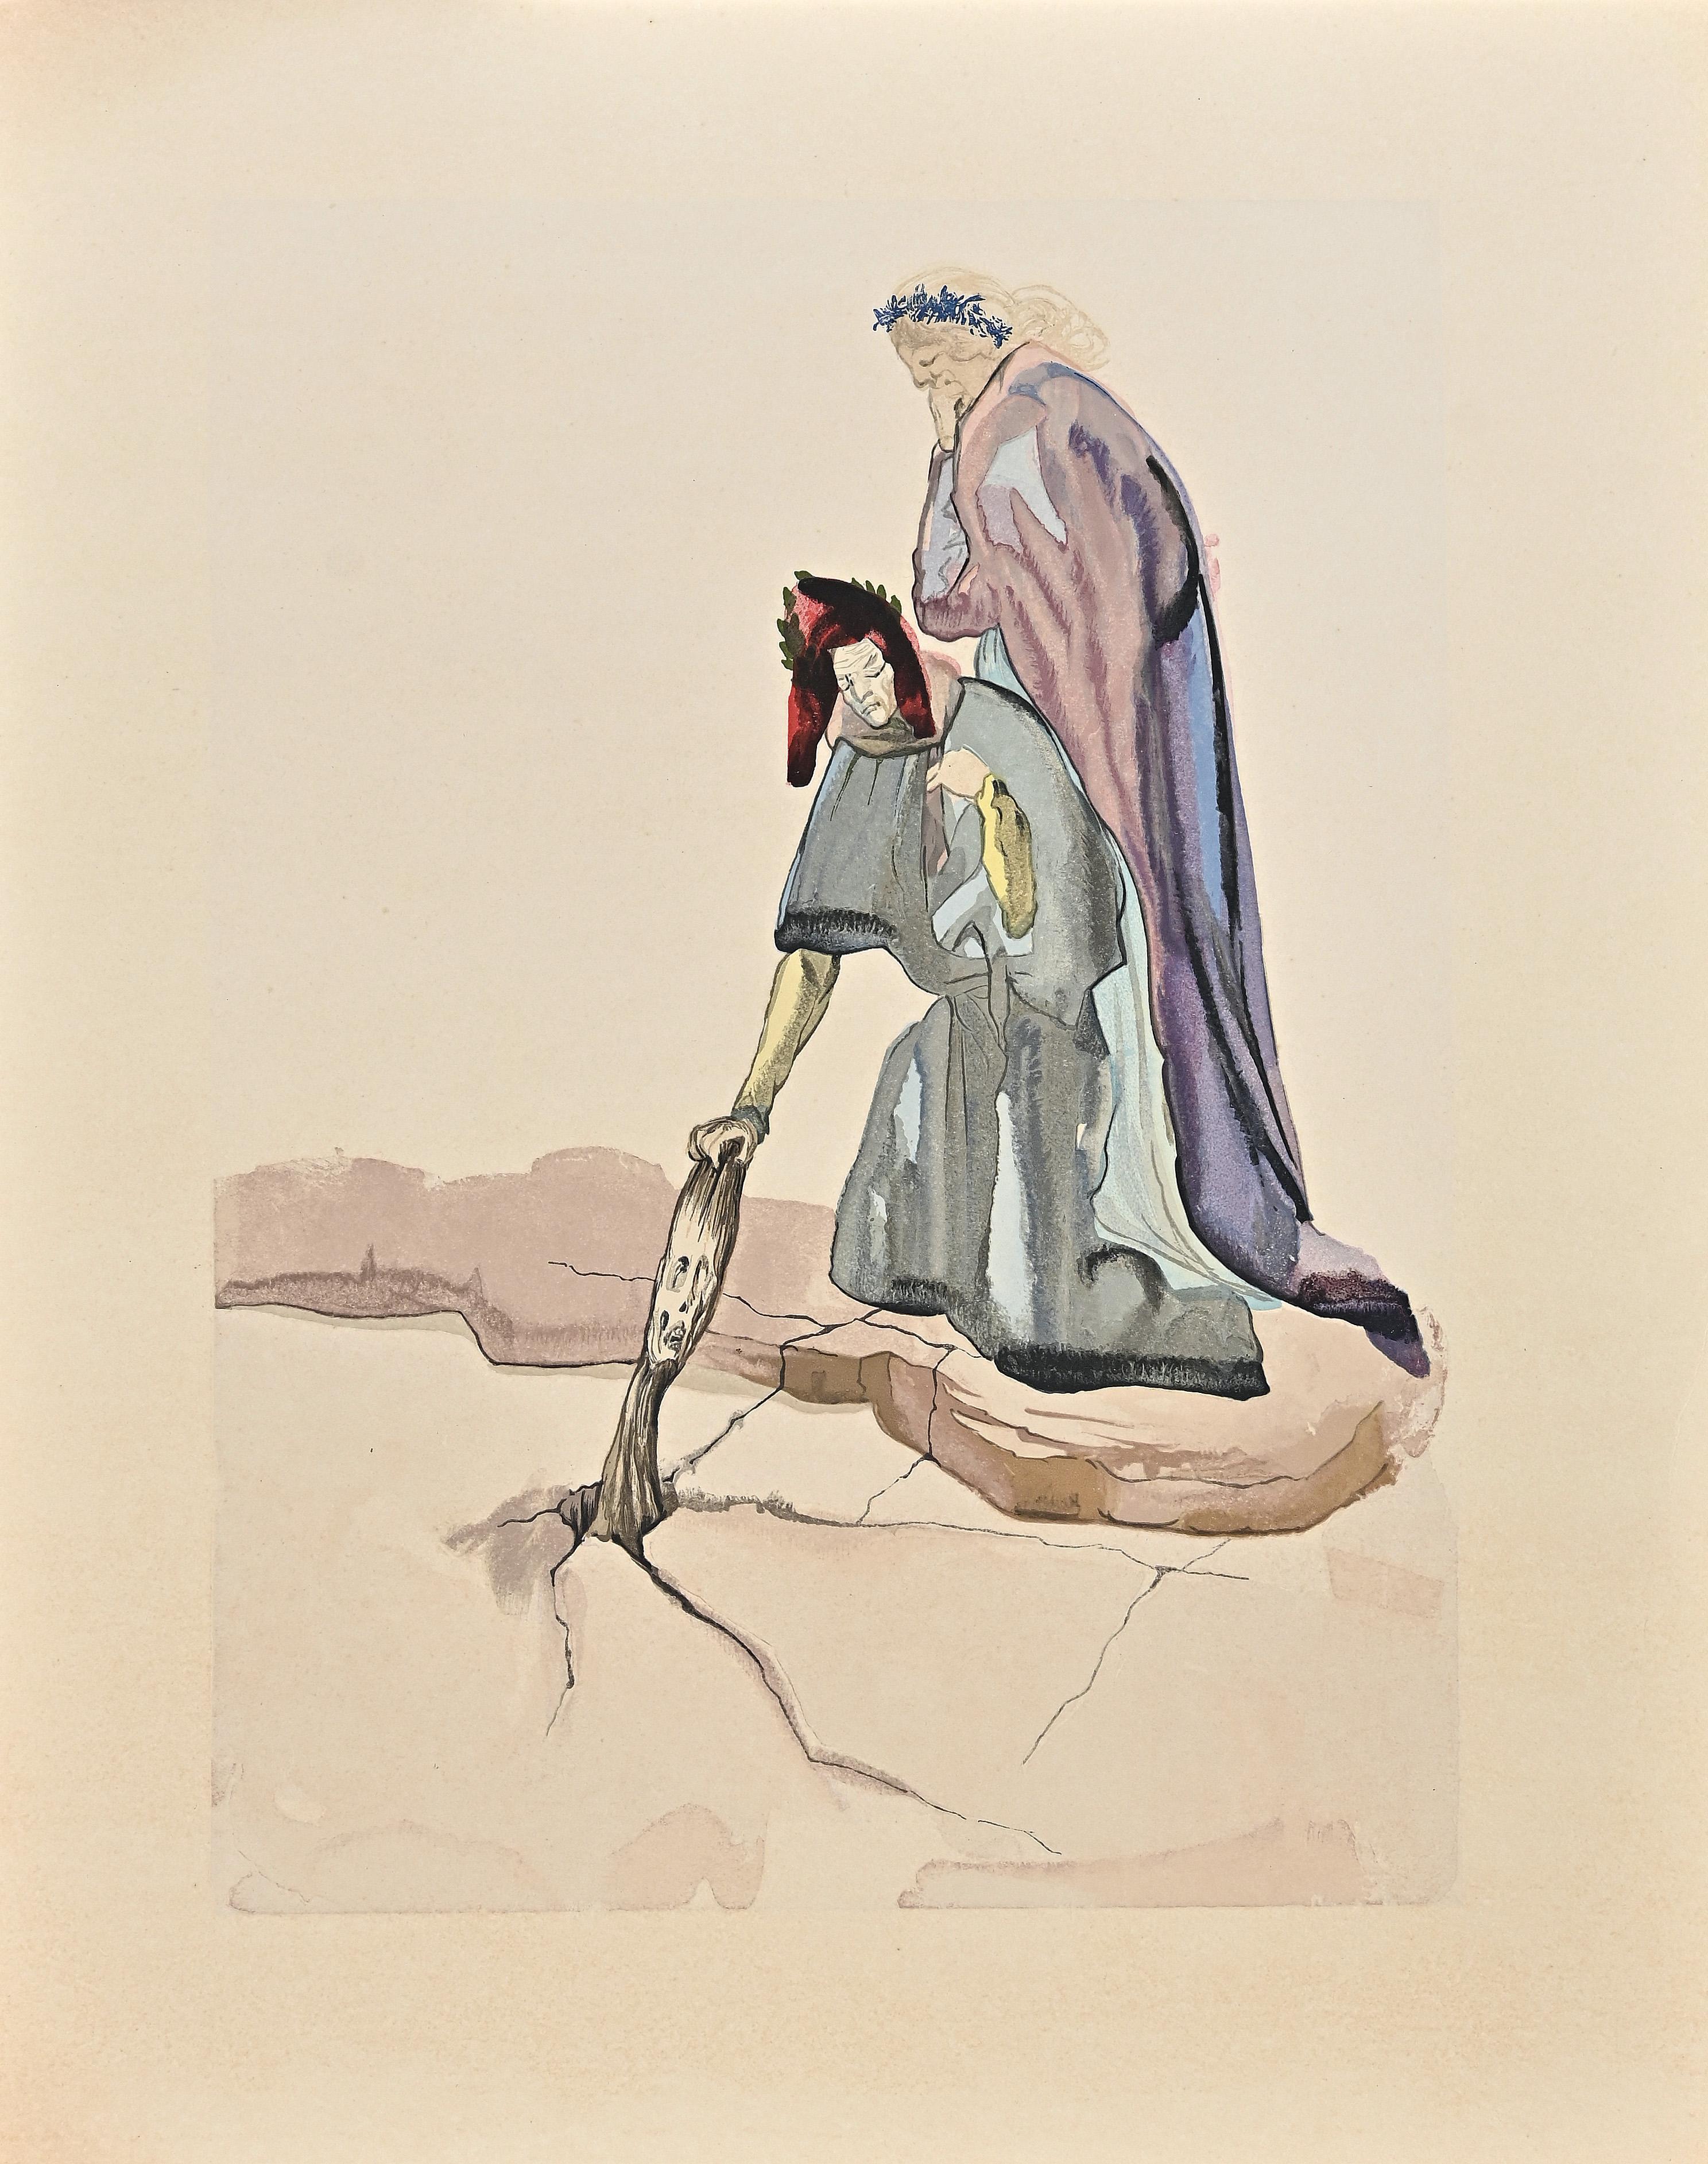 Le souverain de Montaperti - Impression originale sur bois attribuée à Salvador Dal - 1963